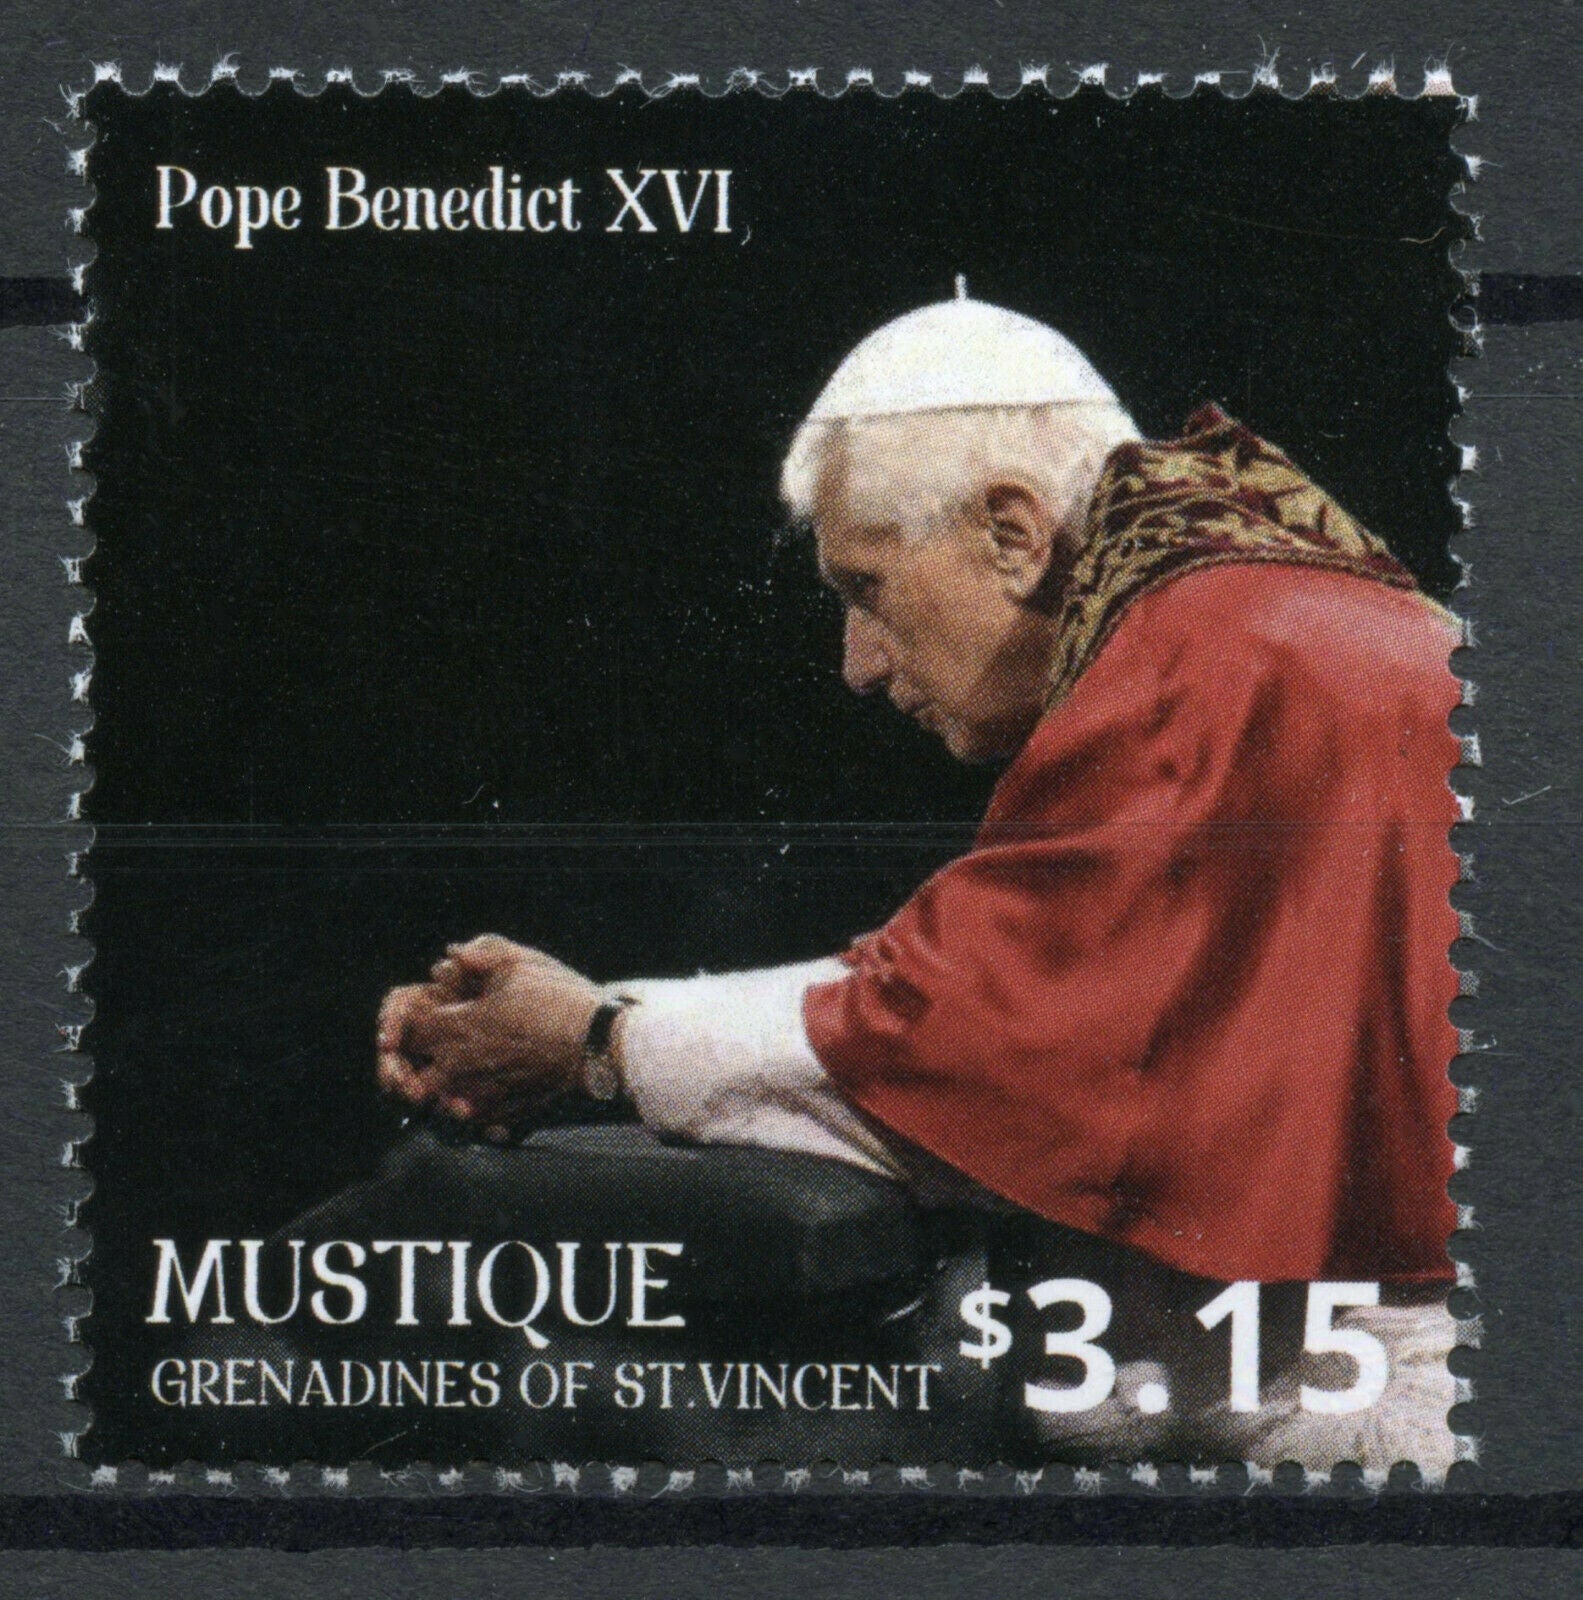 Mustique Gren St Vincent Stamps 2014 MNH Pope Benedict XVI Meets Francis 1v Set